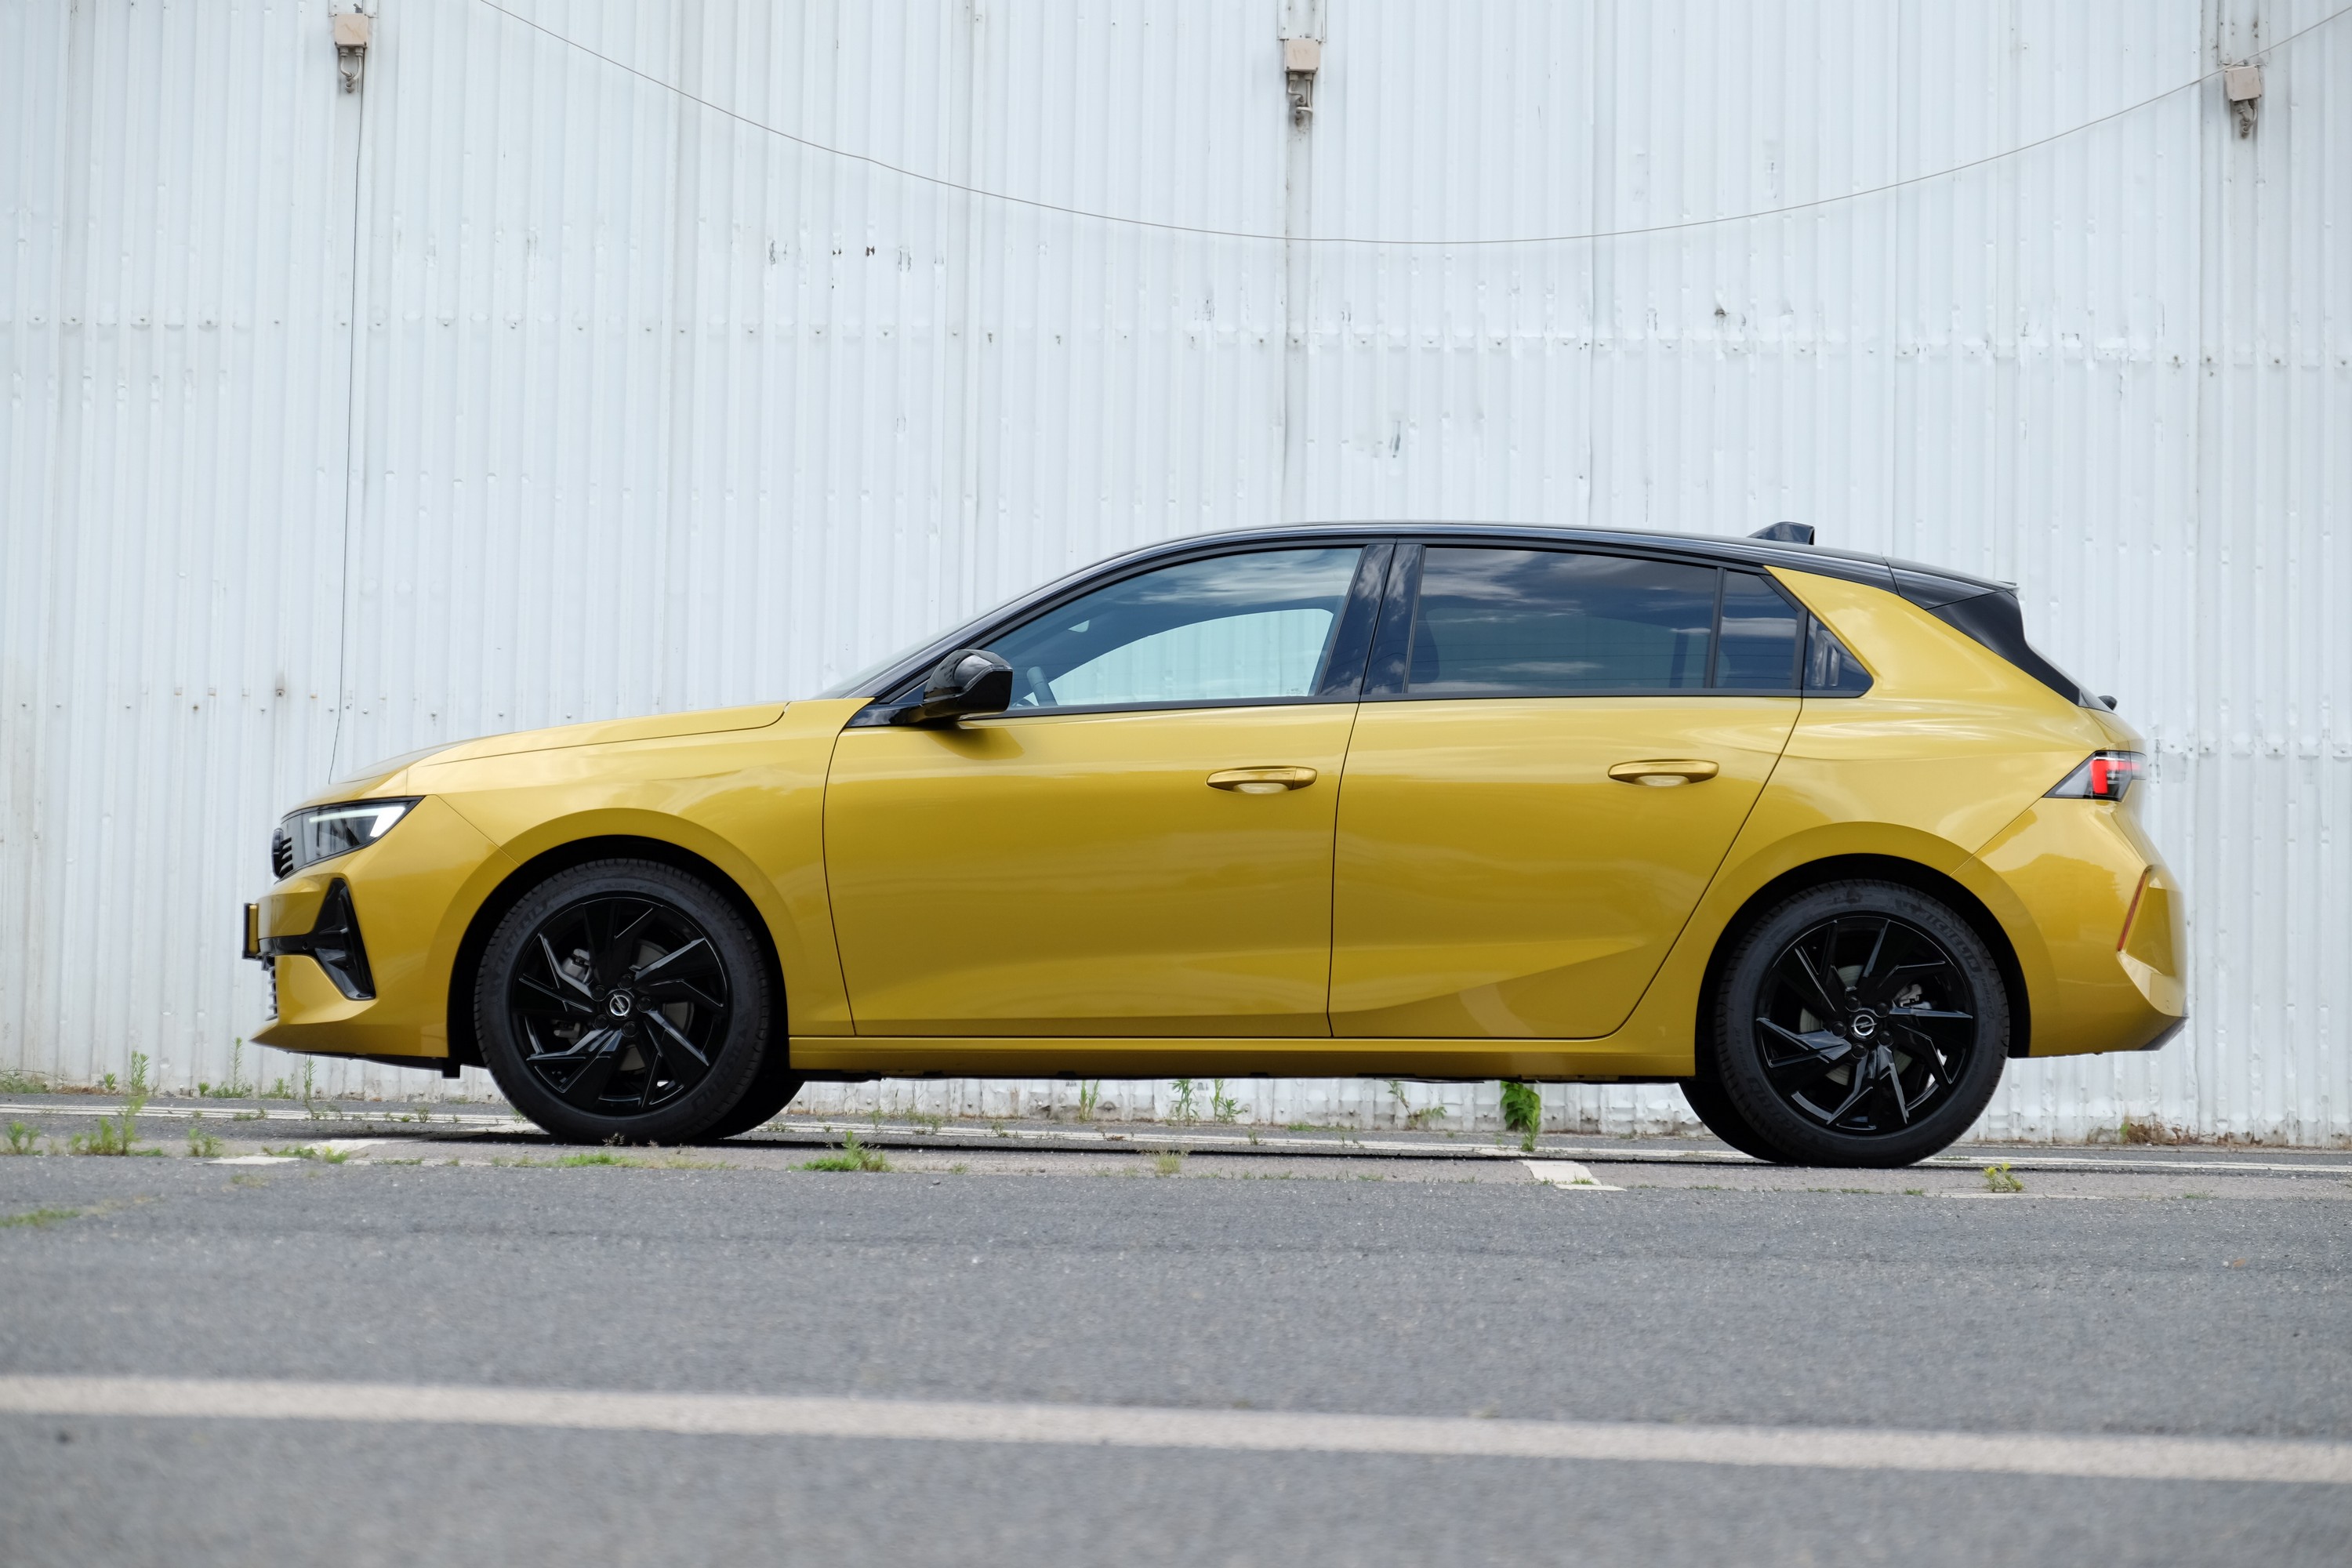 31 évesen a legjobb formában? – Teszten az új Opel Astra 7